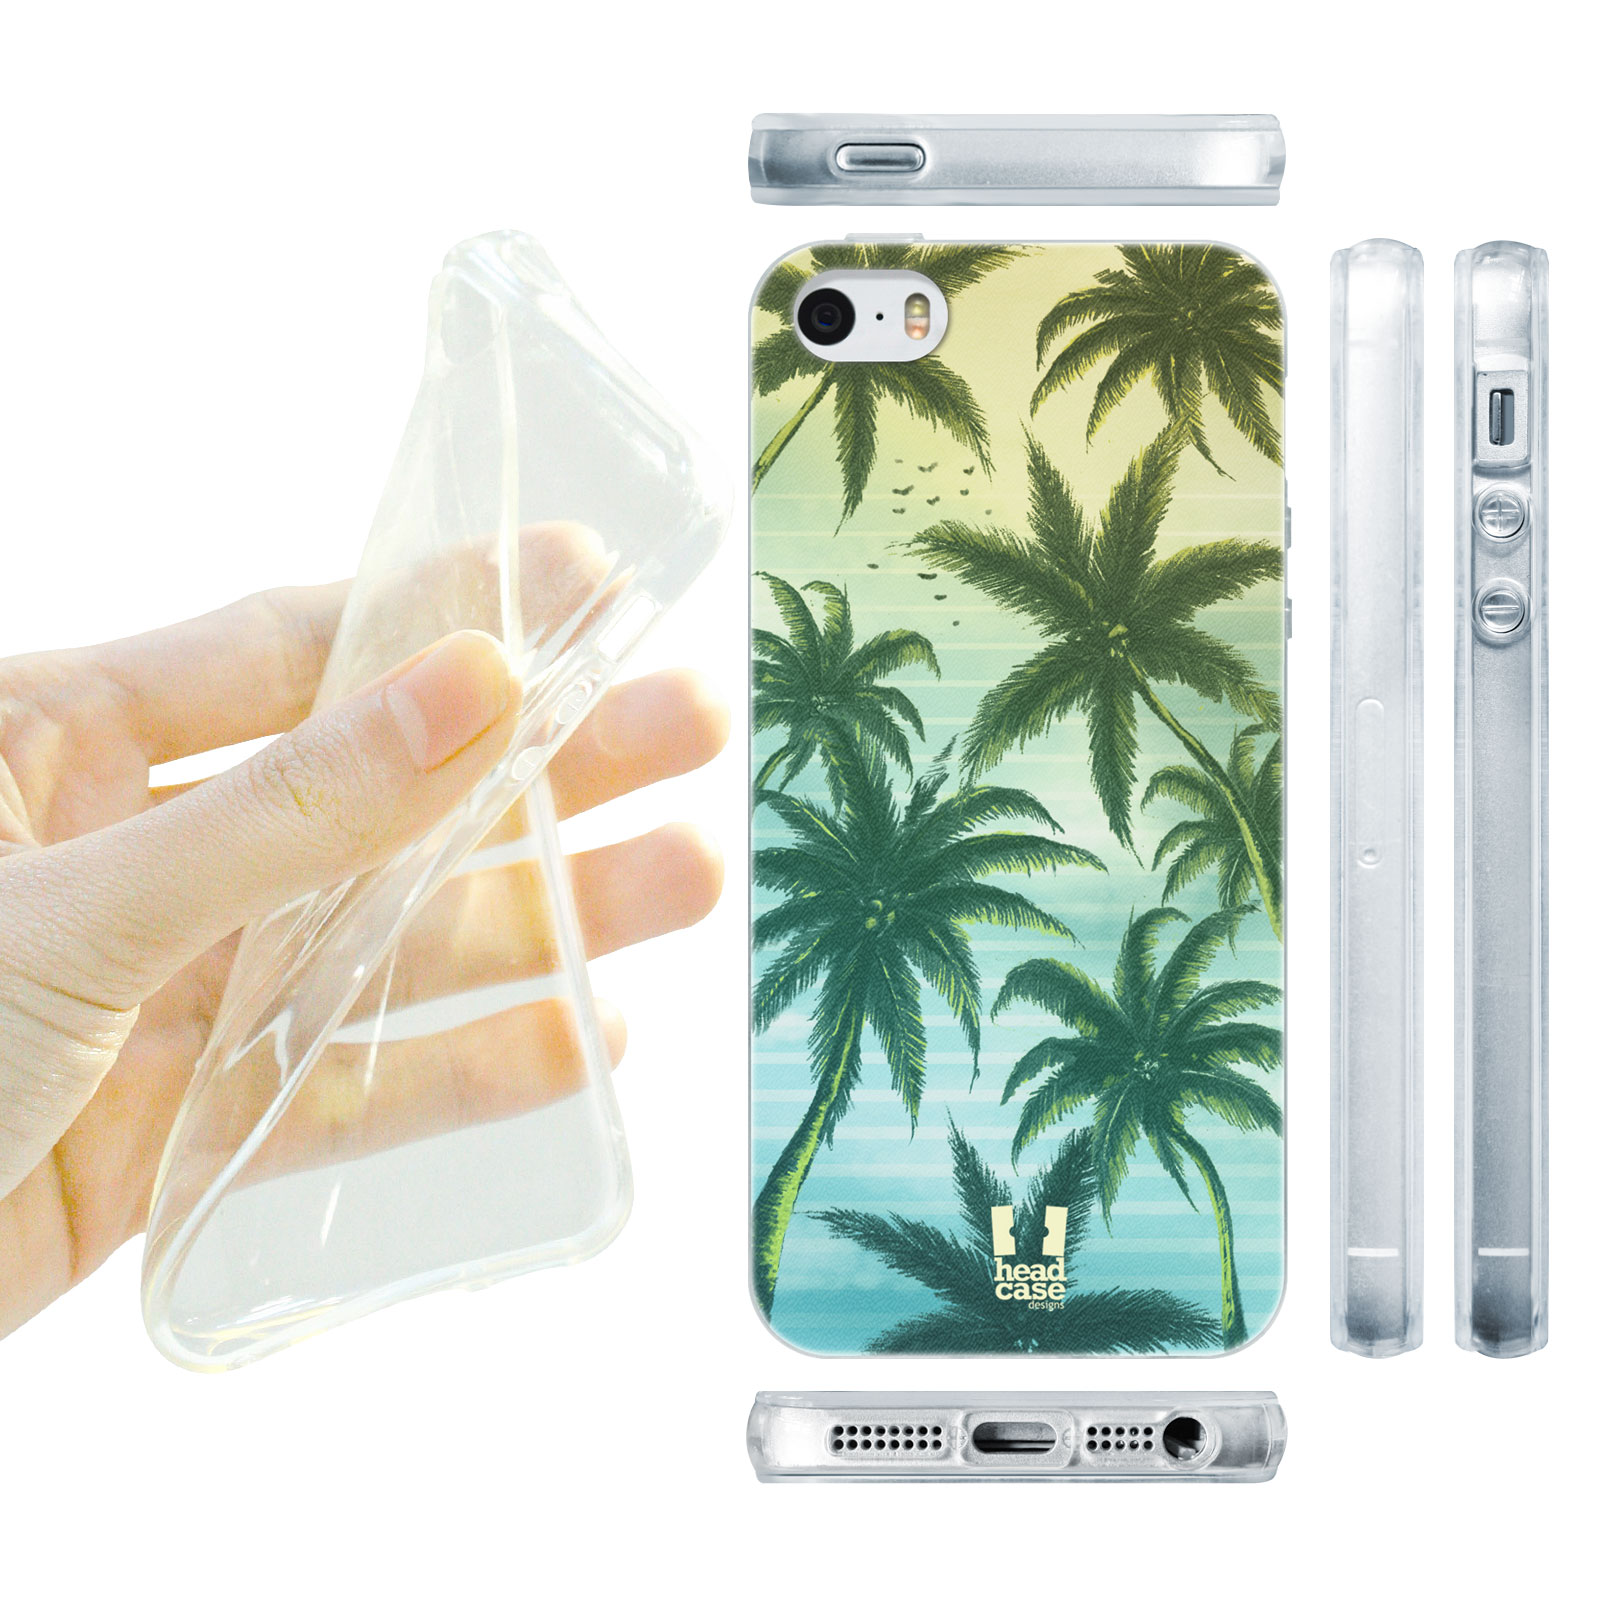 HEAD CASE silikonový obal na mobil Iphone 5/5S pláž modrá a zelená palma